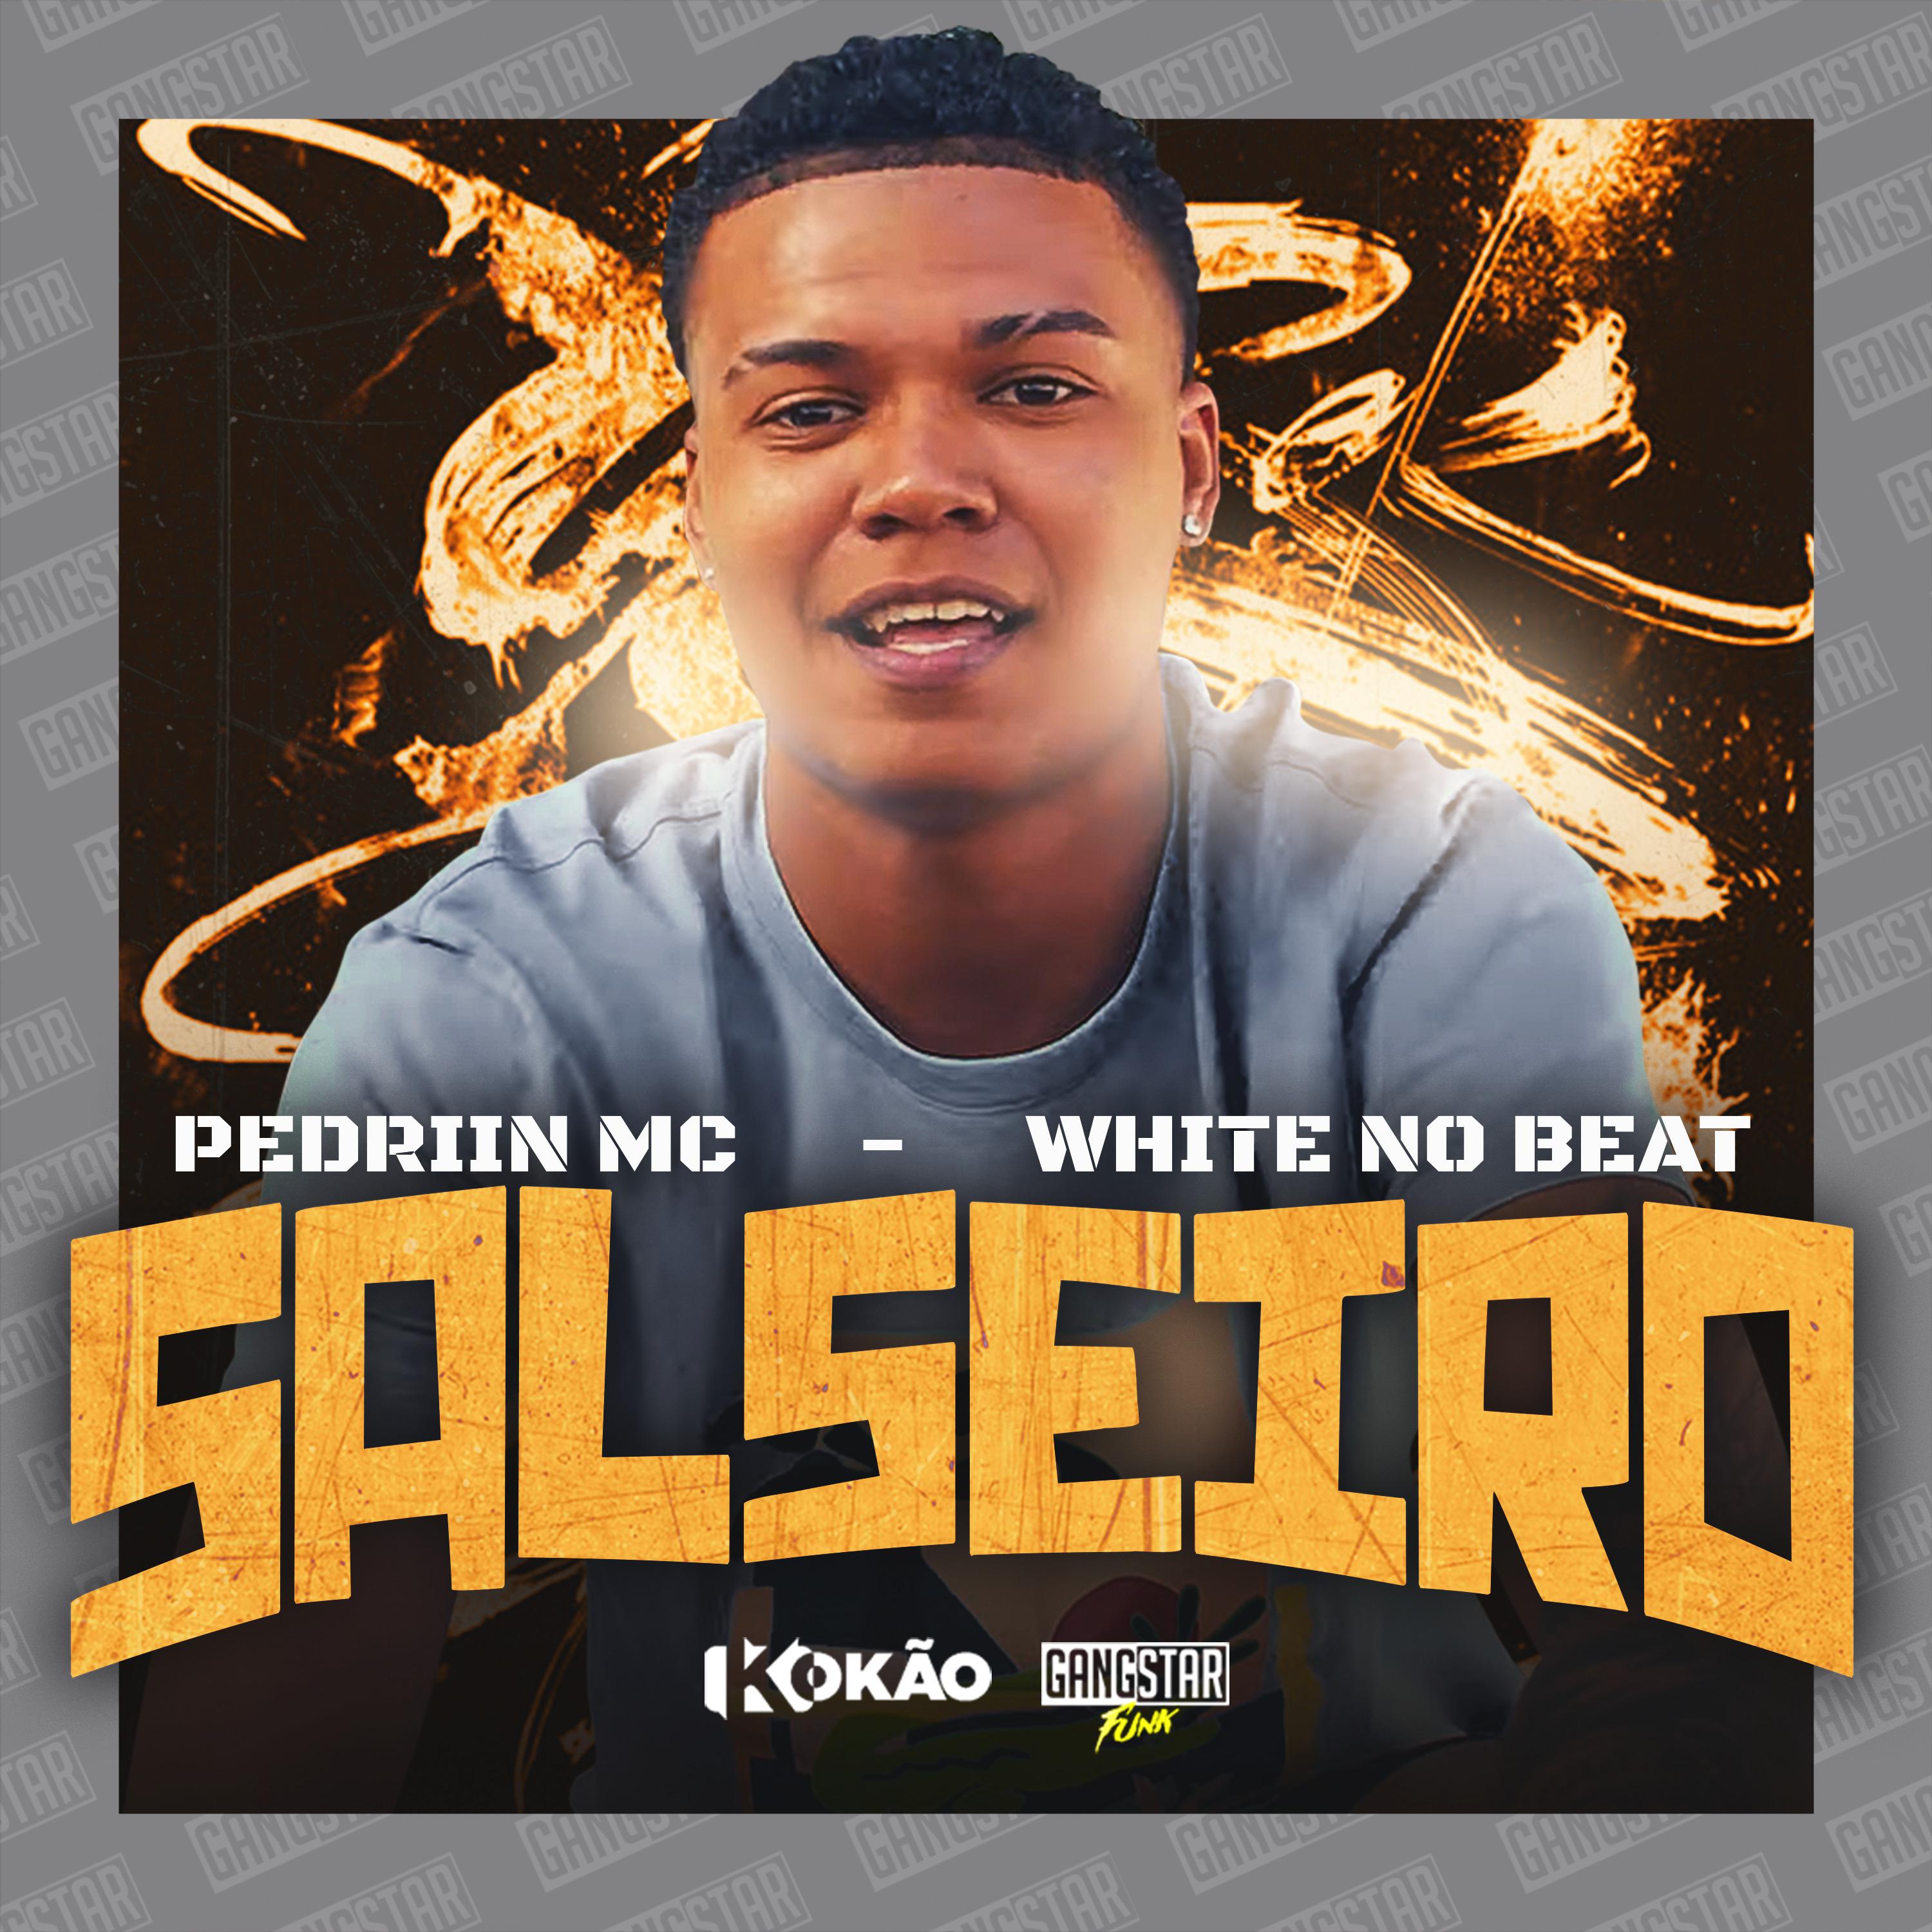 Постер альбома Salseiro